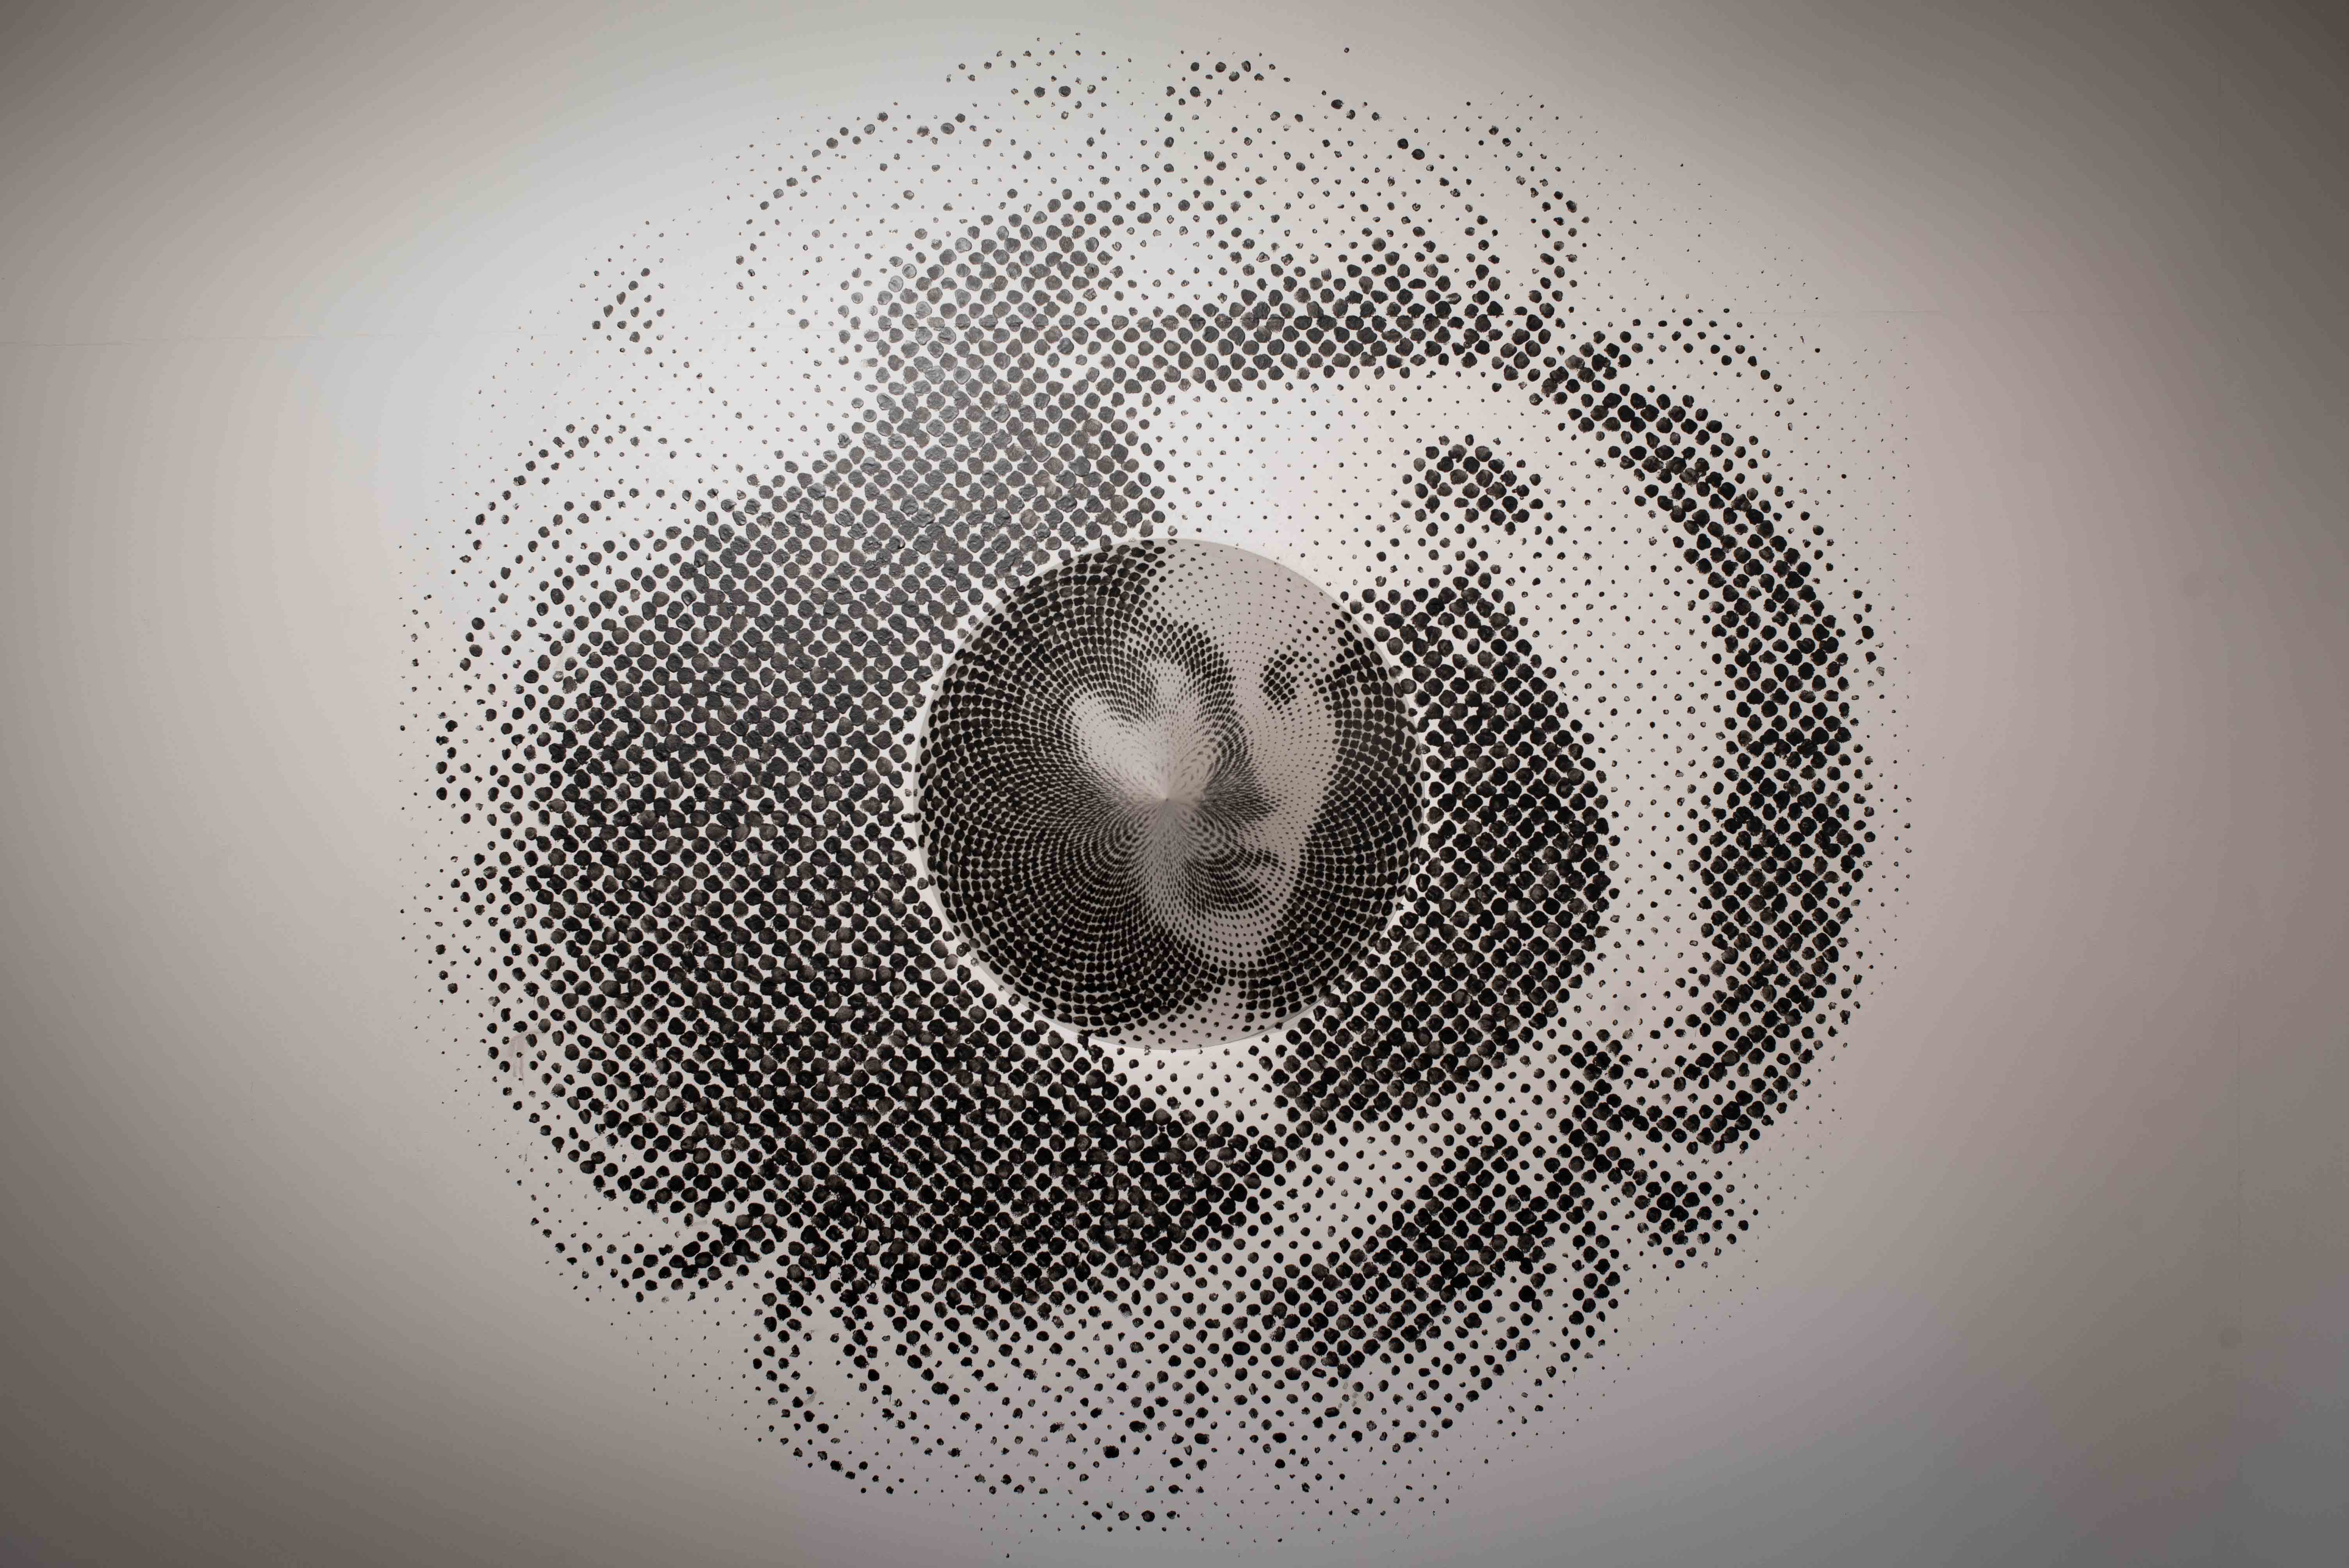 Oeuvre de Marc Didou où apparaît le visage d'une femme au centre d'un cercle de petits points noirs.